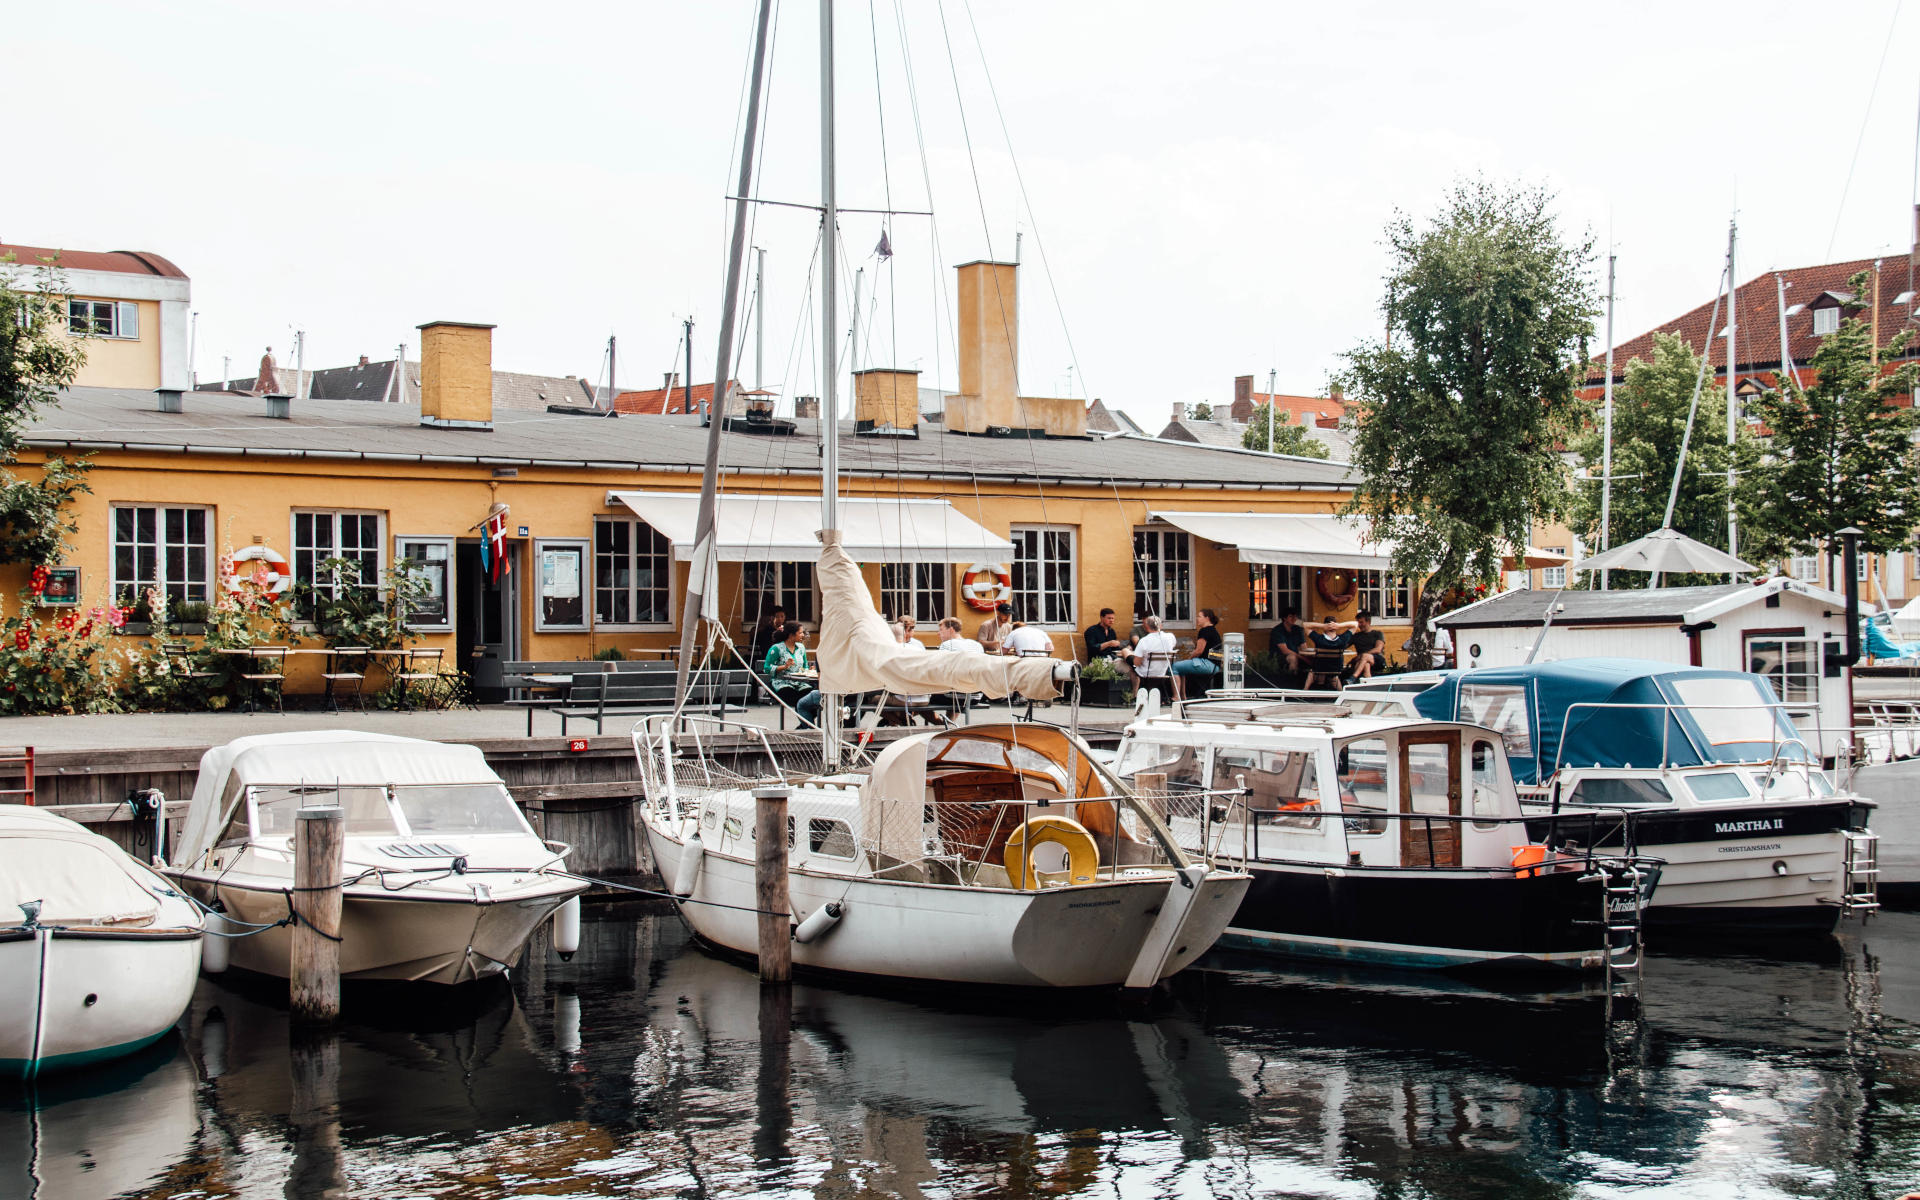 Im Wasser spiegeln sich die Boote, die in Kopenhagen angelegt haben.